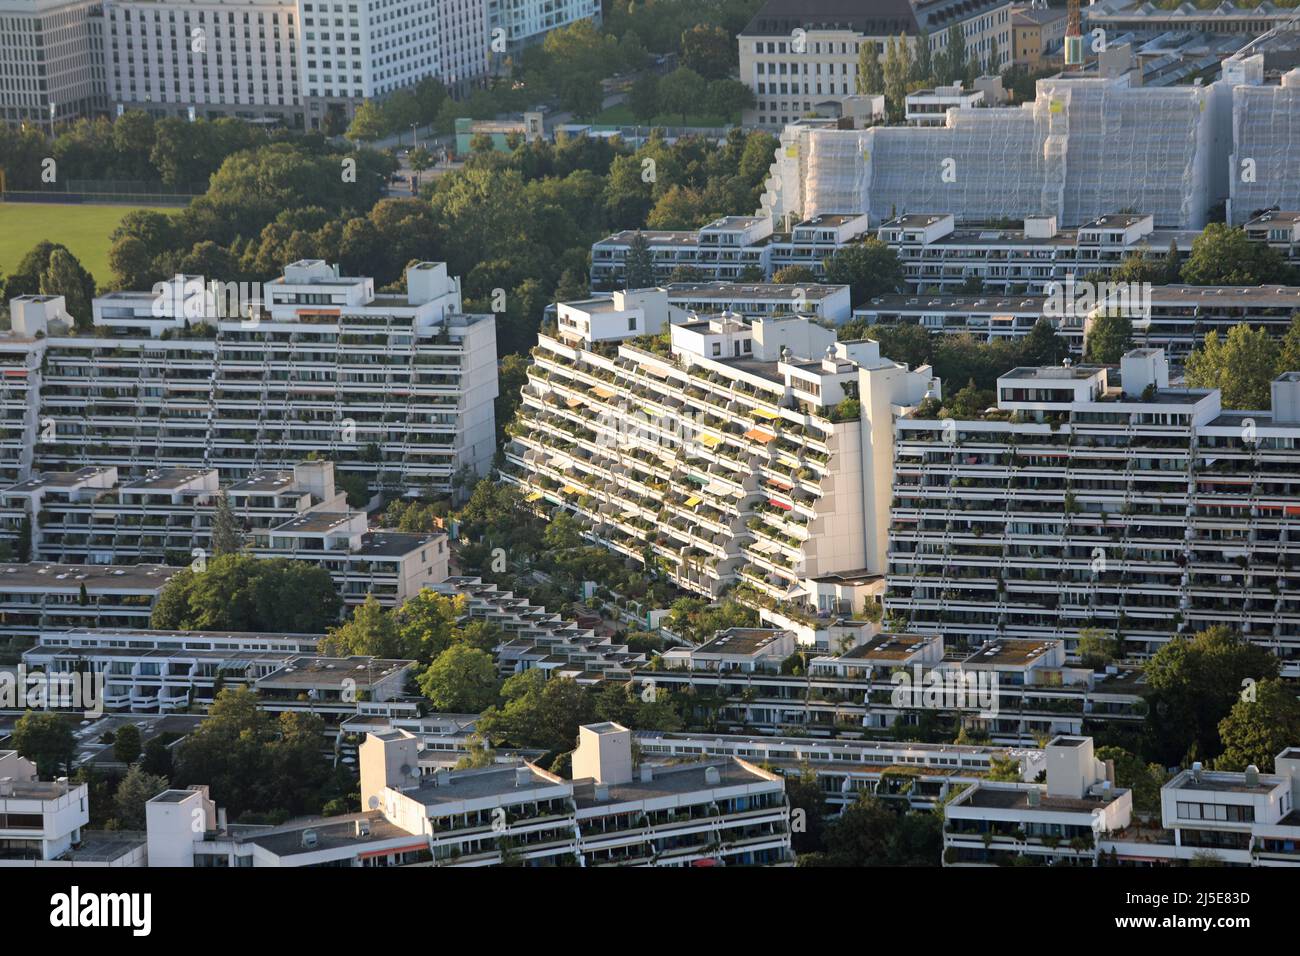 München, München, Deutschland - 25. August 2021: Blick von oben auf das OLYMPISCHE DORF mit Häusern und Wohnungen, die bei den Olympischen Sommerspielen 1972 genutzt wurden Stockfoto